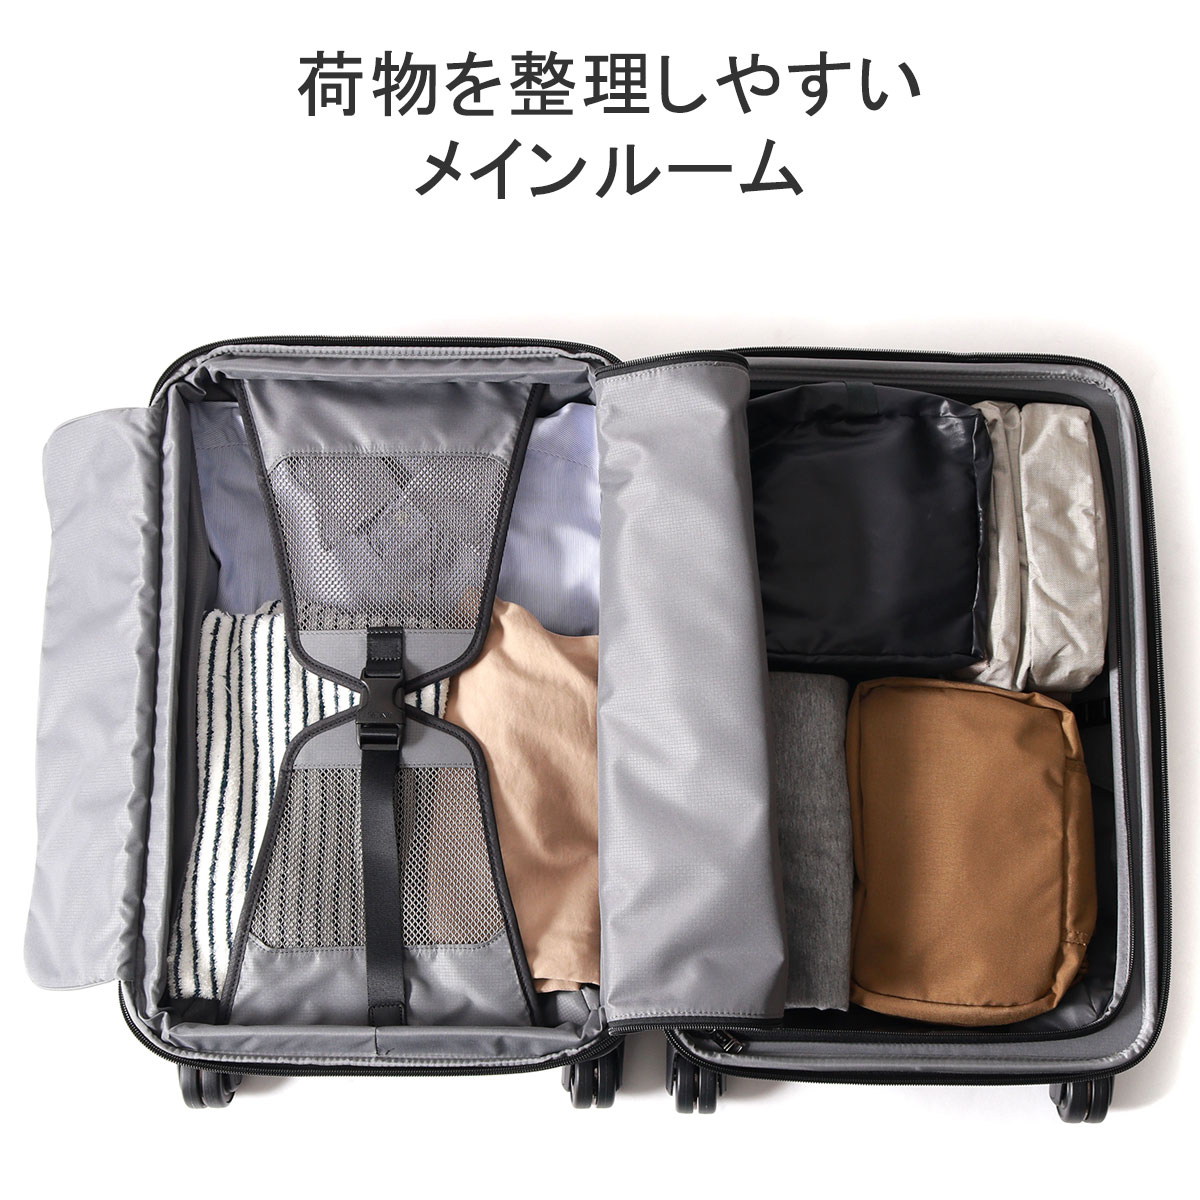 最大36% 6/9限定 正規品5年保証 トゥミ スーツケース 機内持ち込み 